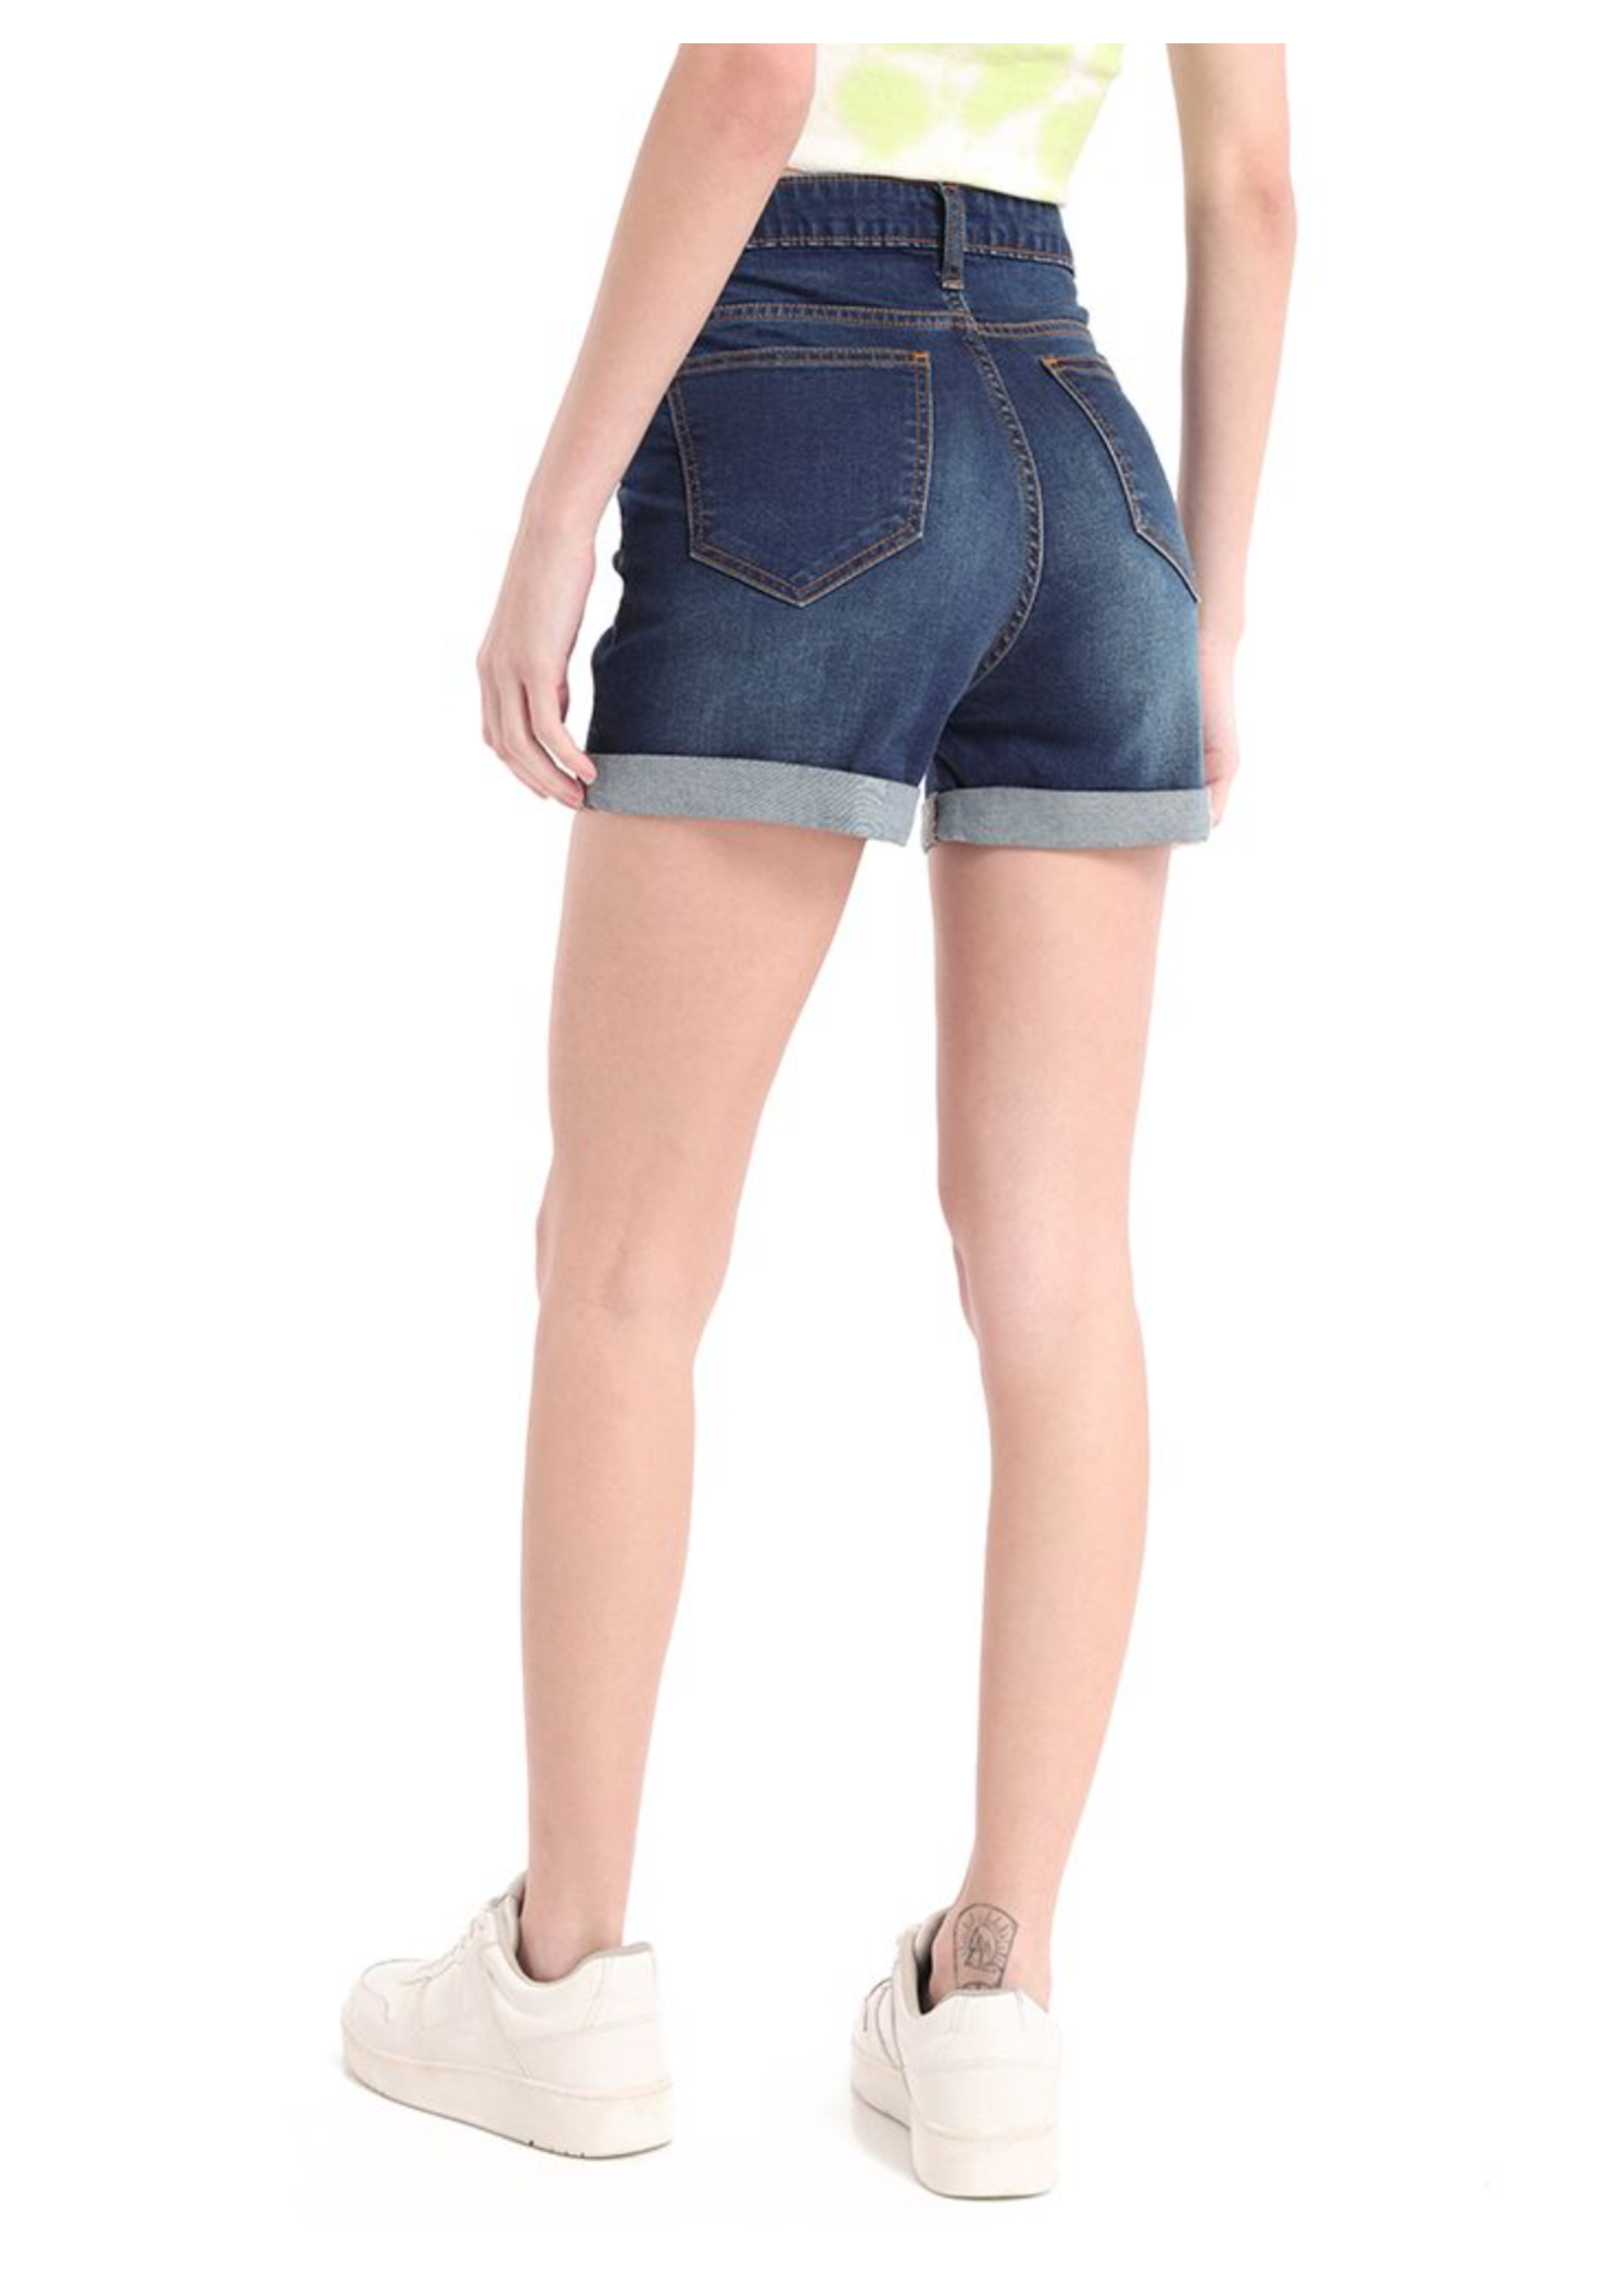 Myra Bag Denim Shorts